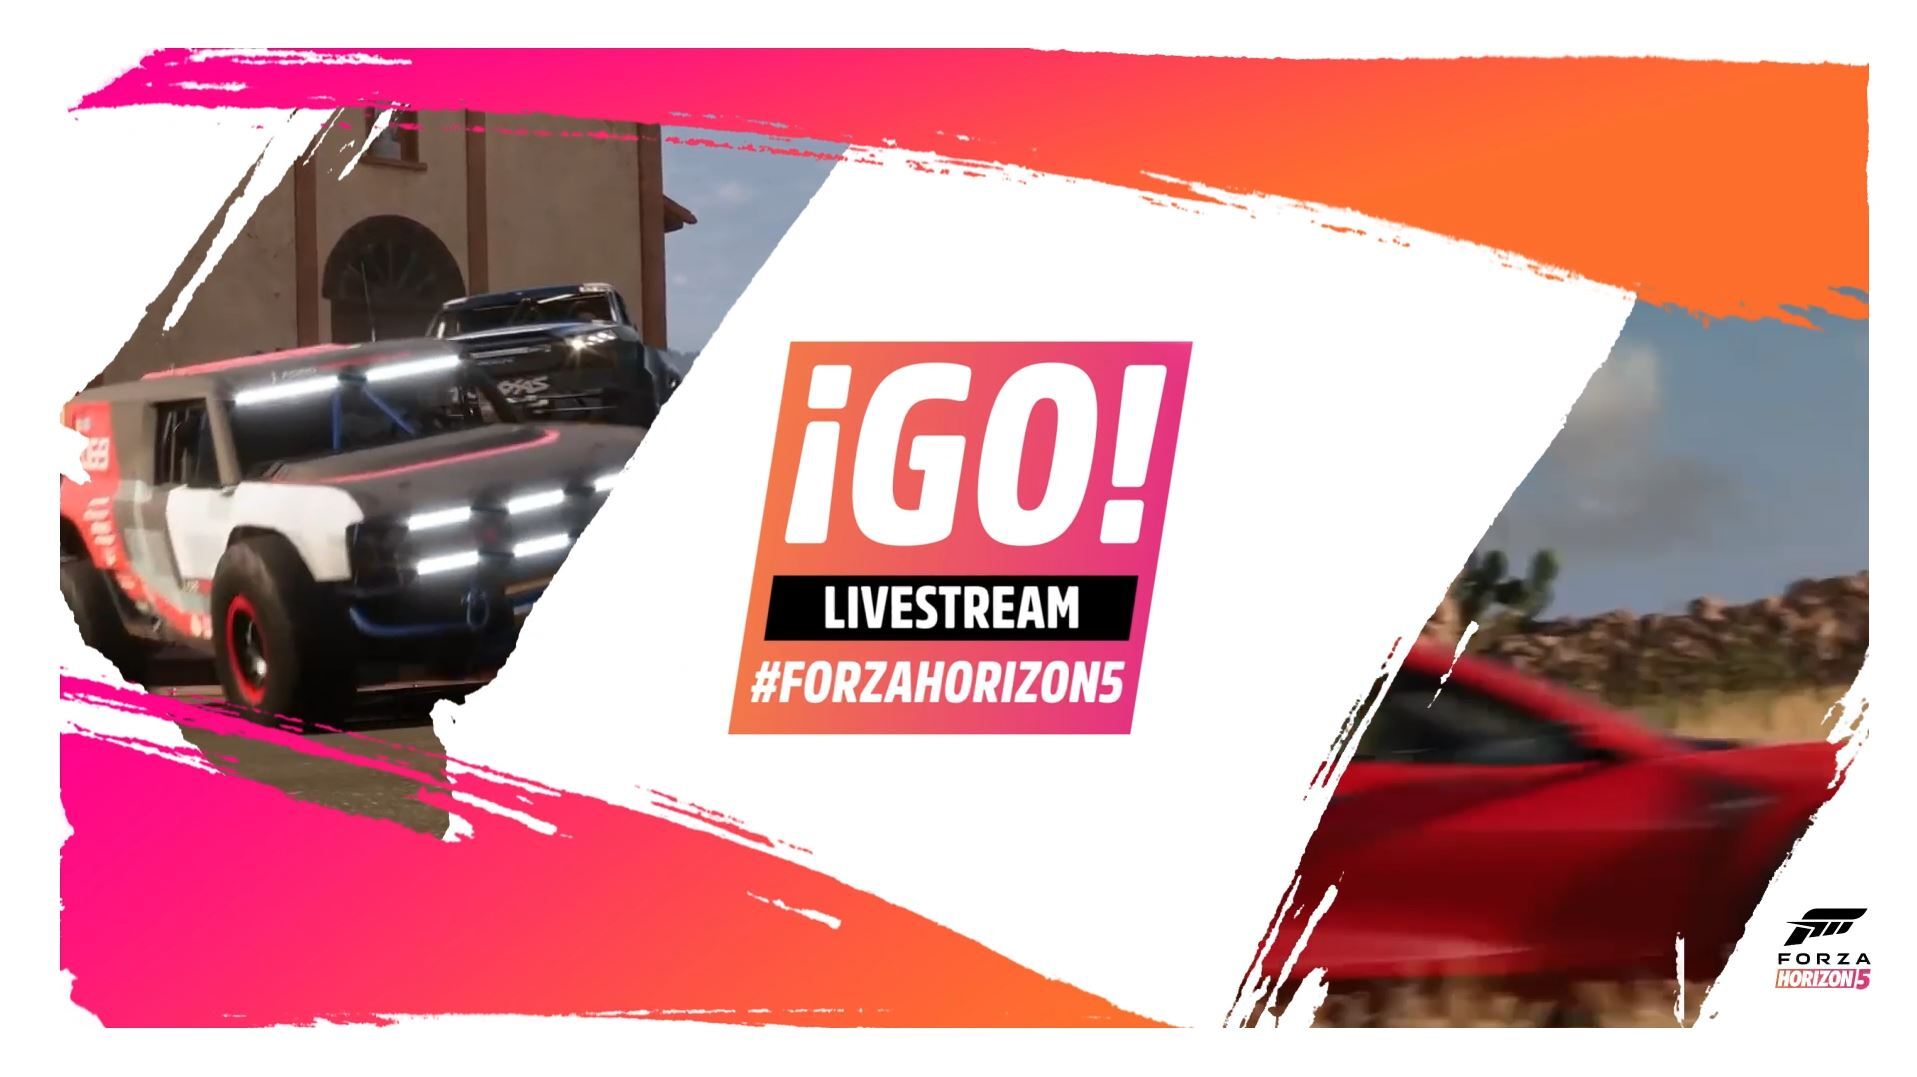 Sei beim großen ¡GO! Livestream #ForzaHorizon5 am 9. November dabei